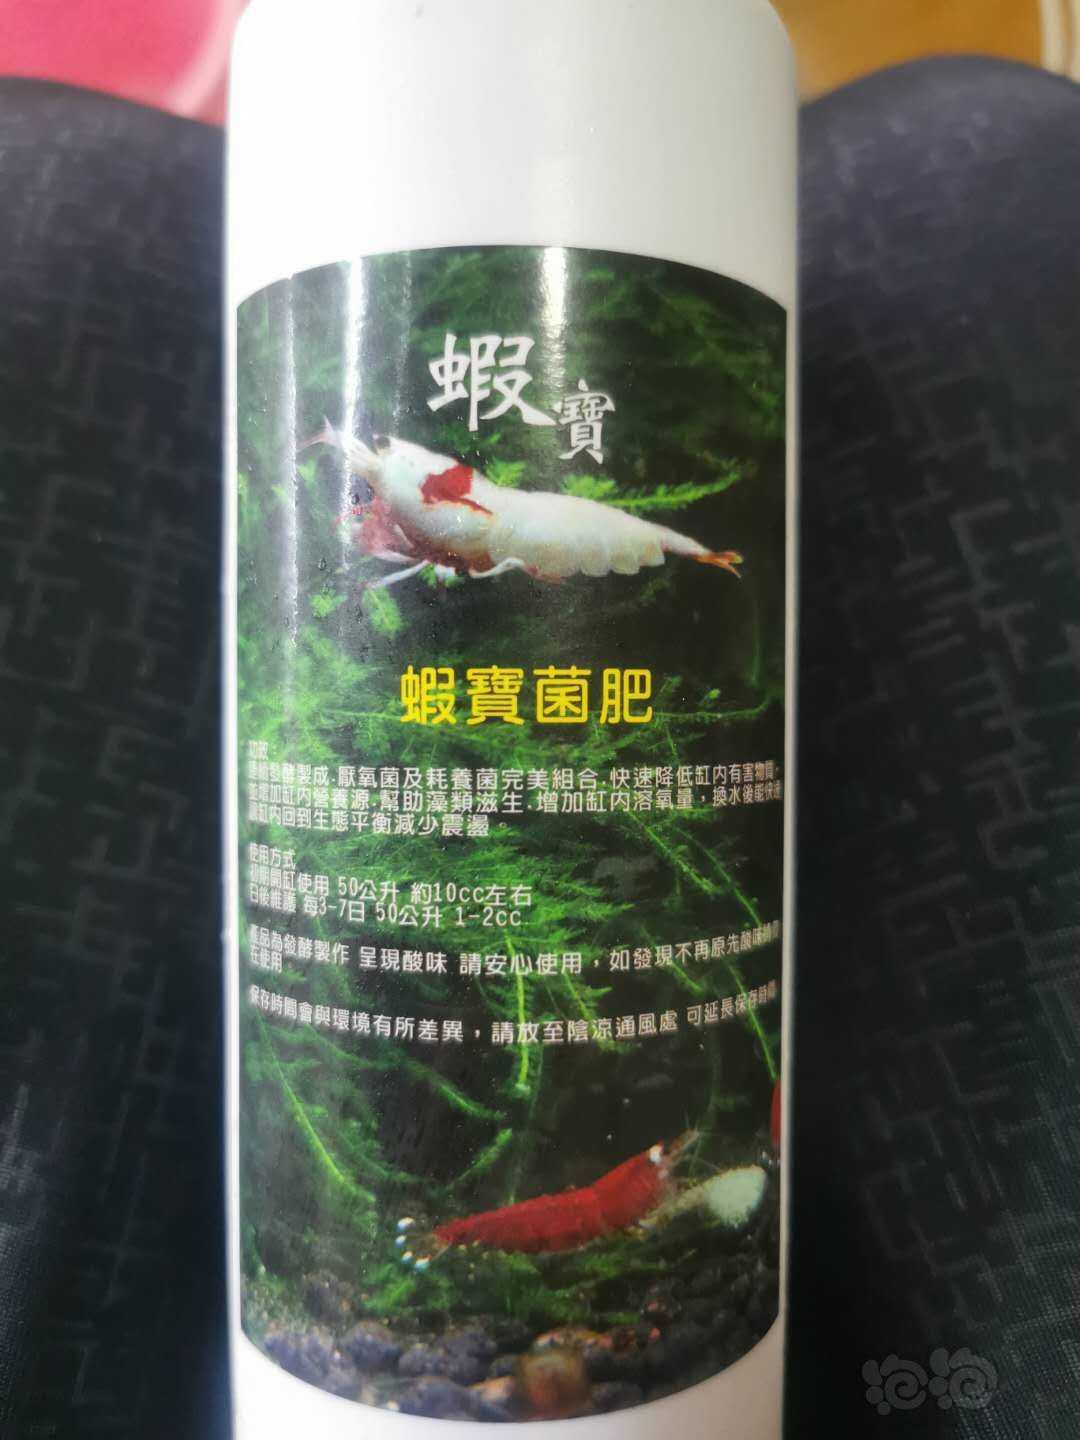 出水晶虾专业产品台湾森林叔叔虾五宝-图9